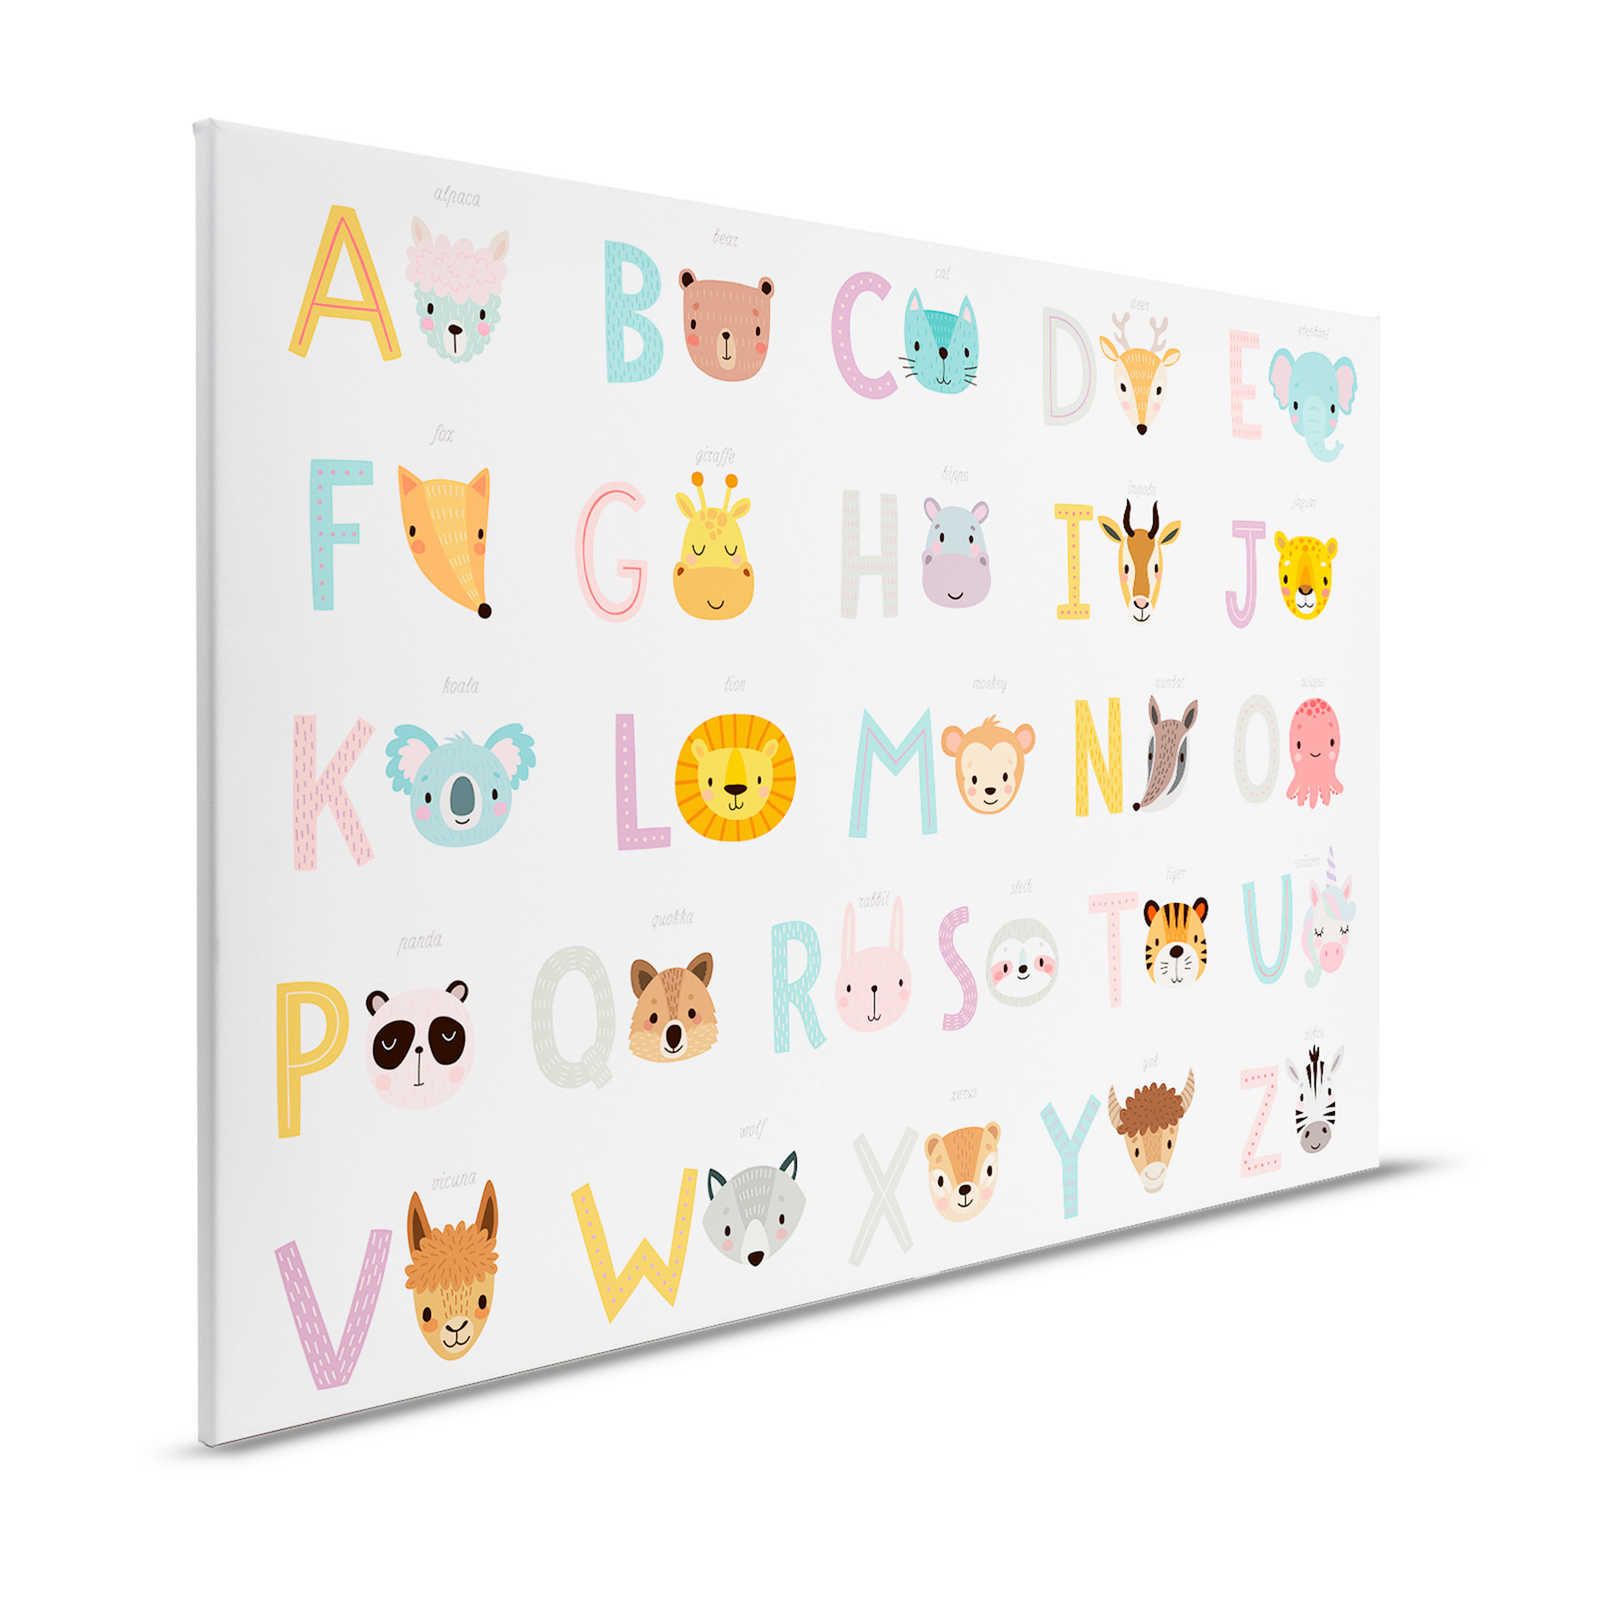 Toile ABC avec animaux et noms d'animaux - 120 cm x 80 cm
